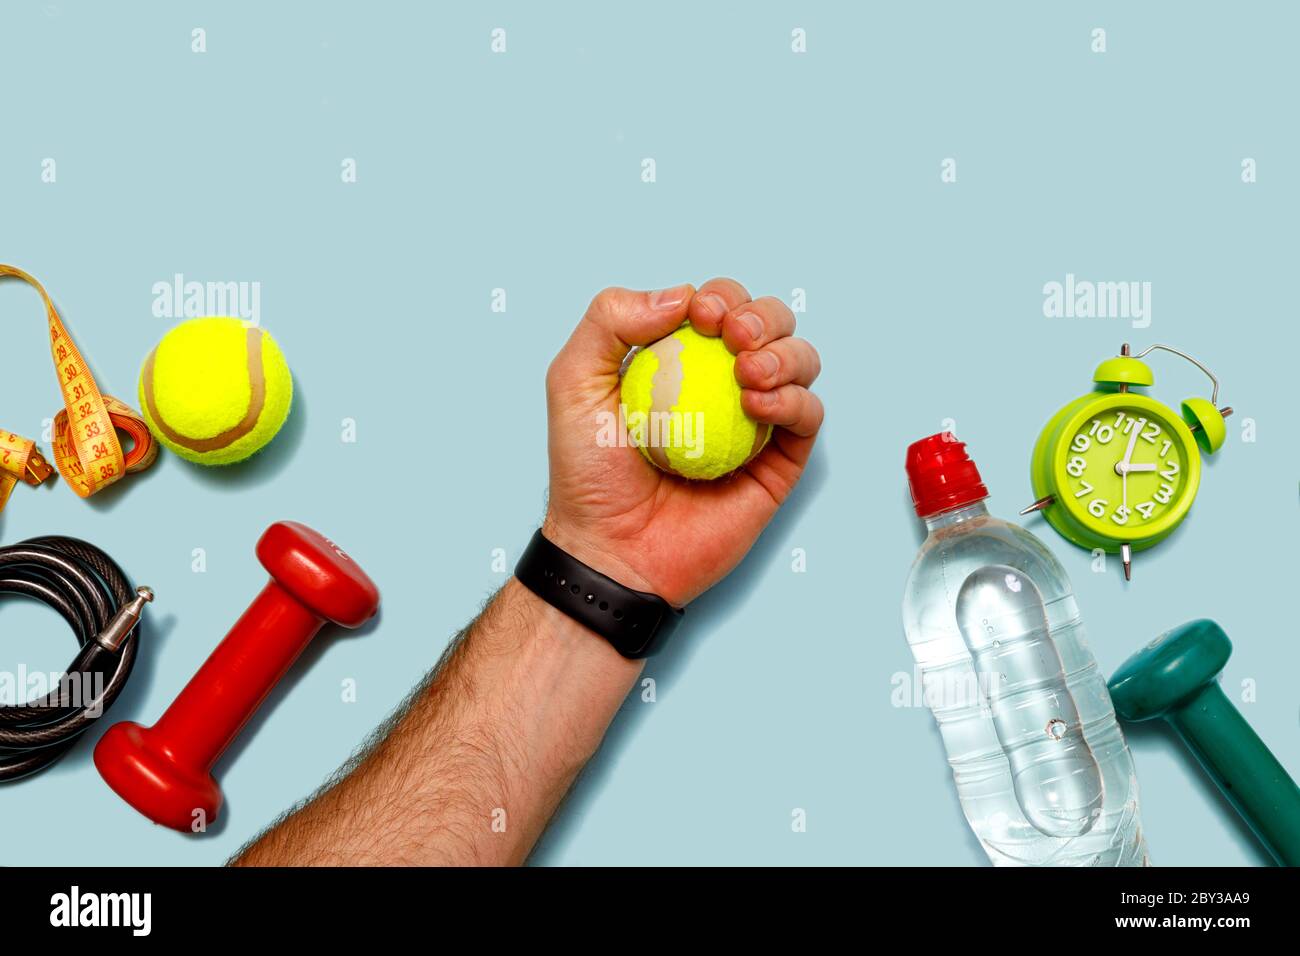 Flach liegend schießen von grünem Wecker, Tennisball, Flasche Wasser,  Maßband, männliche Hand und Hanteln auf pastellblauem Hintergrund.  Draufsicht mit Cop Stockfotografie - Alamy